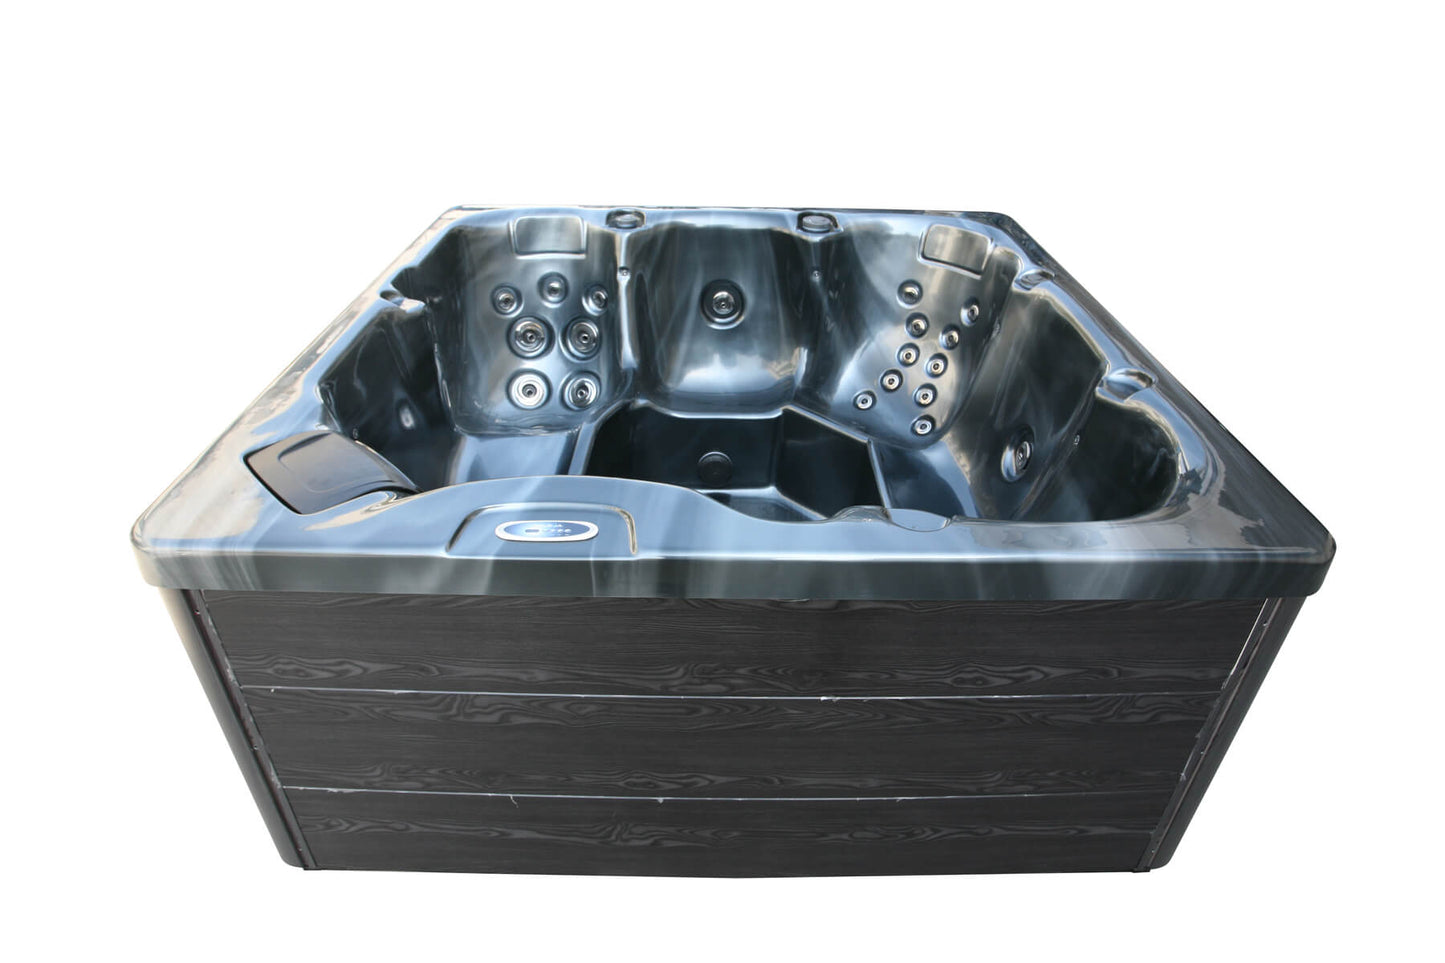 H2O 2500 Series Plug & Play hot tub